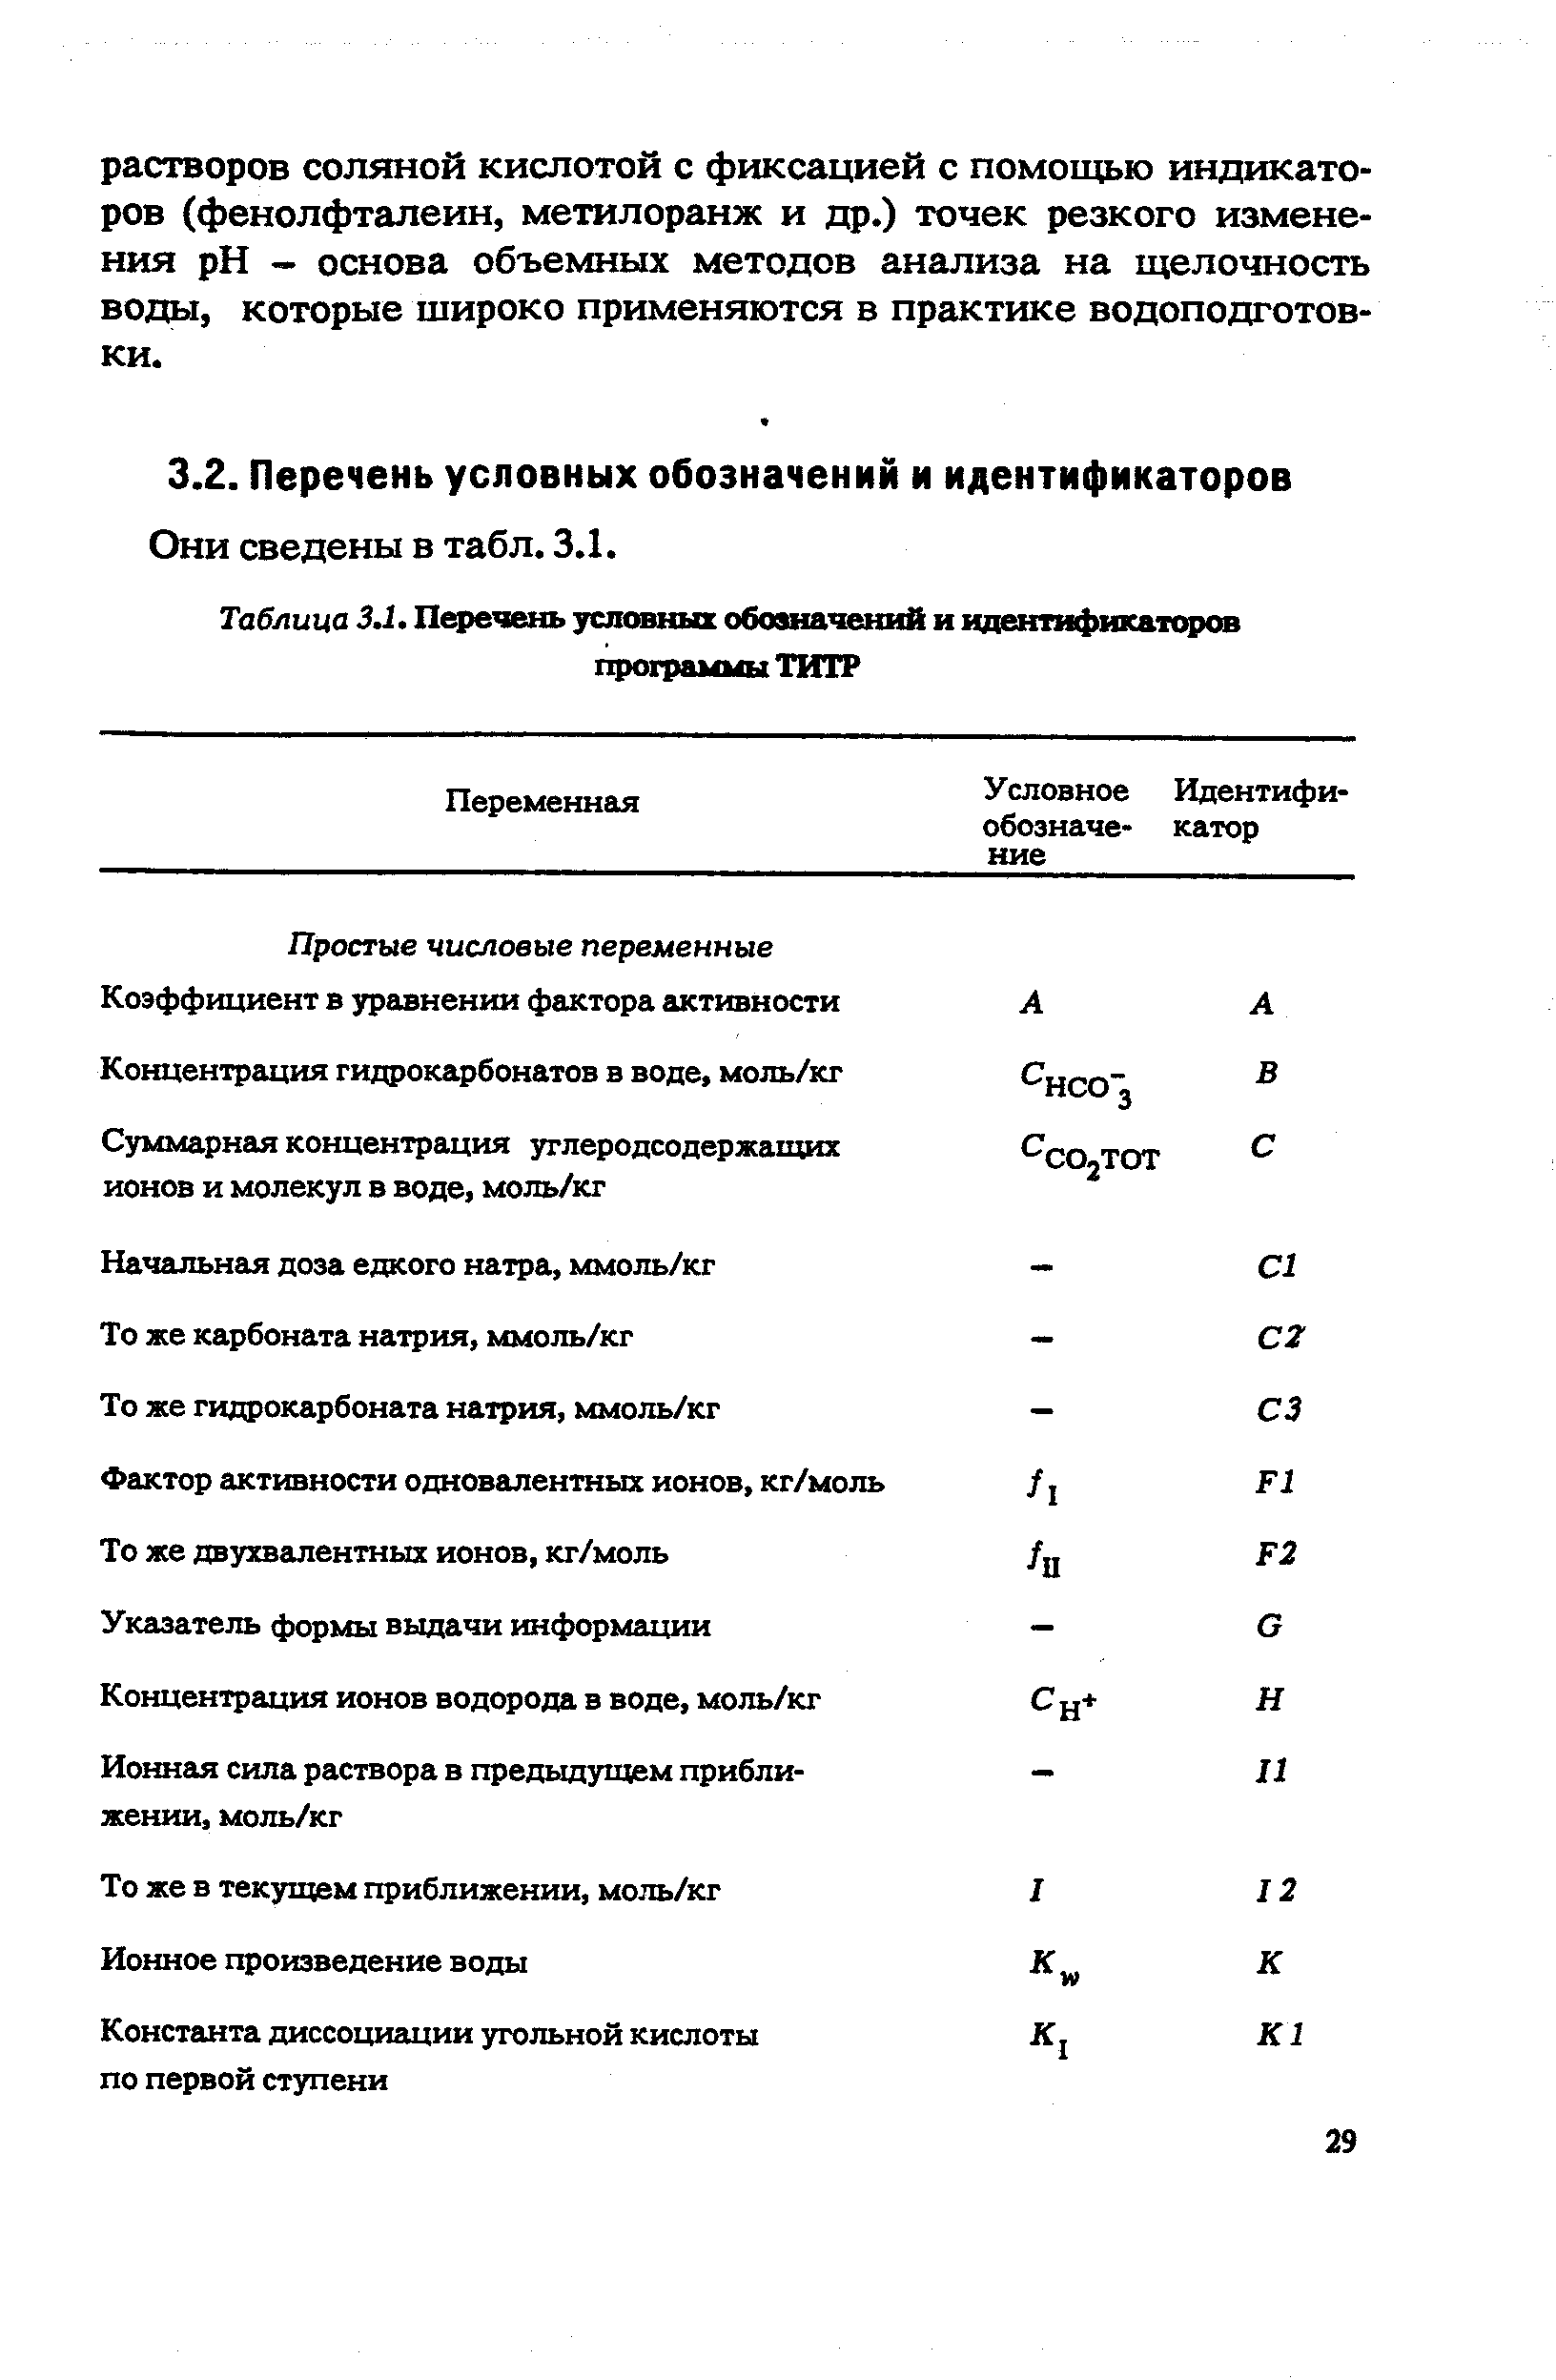 Таблица 3.1. Перечень условных обозначений и идентифнкапфов програ 4мы ТИТР
